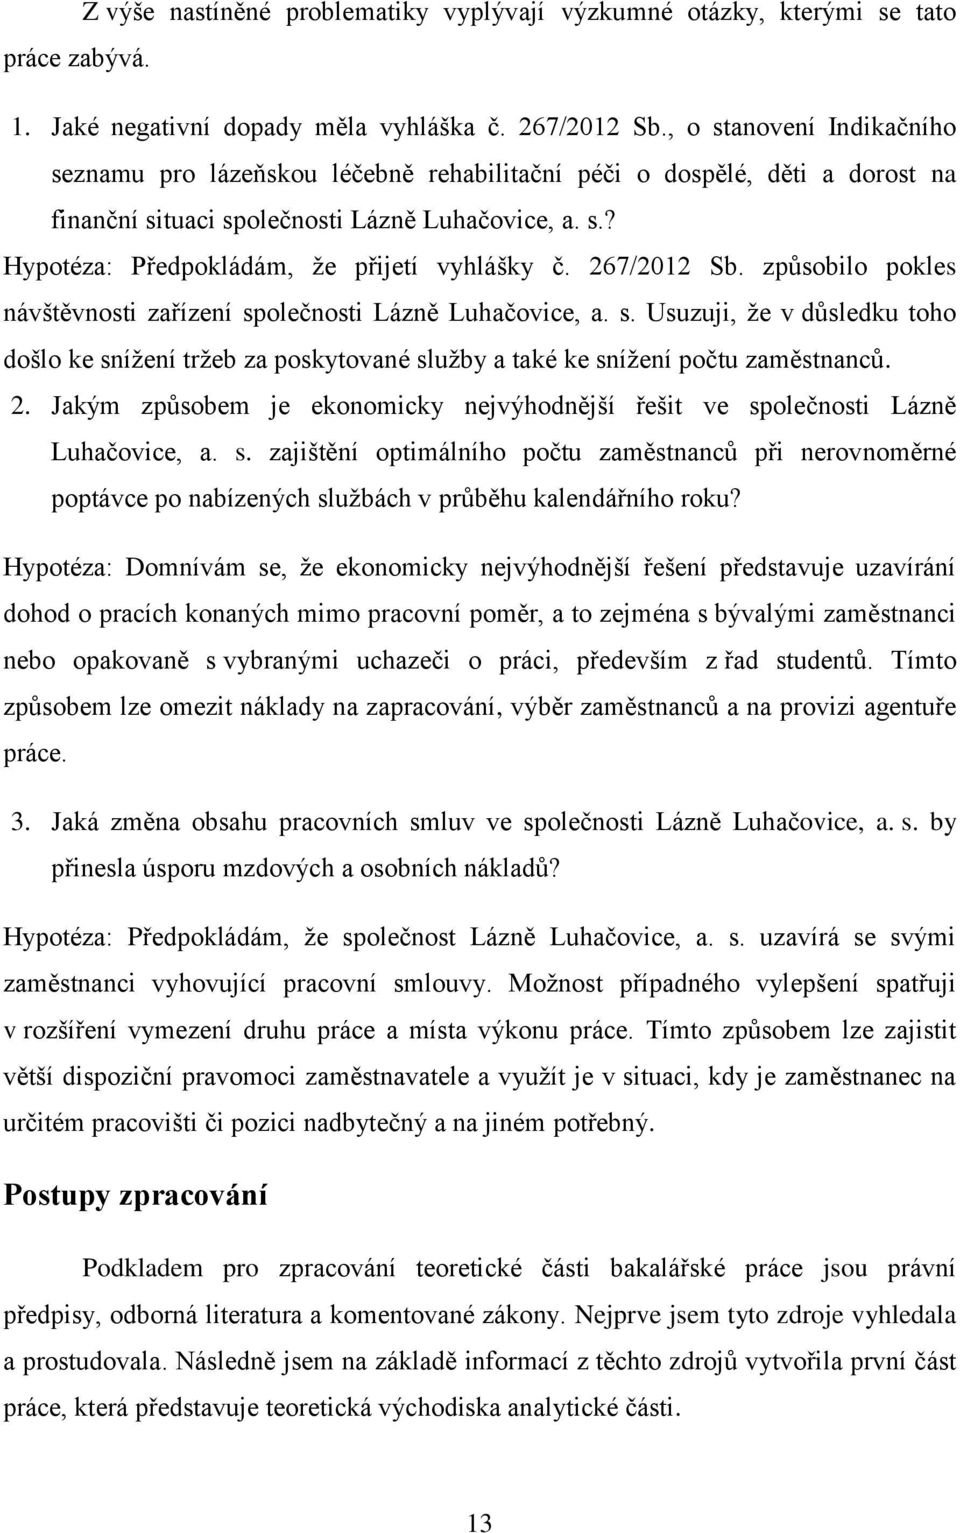 267/2012 Sb. způsobilo pokles návštěvnosti zařízení společnosti Lázně Luhačovice, a. s. Usuzuji, že v důsledku toho došlo ke snížení tržeb za poskytované služby a také ke snížení počtu zaměstnanců. 2.